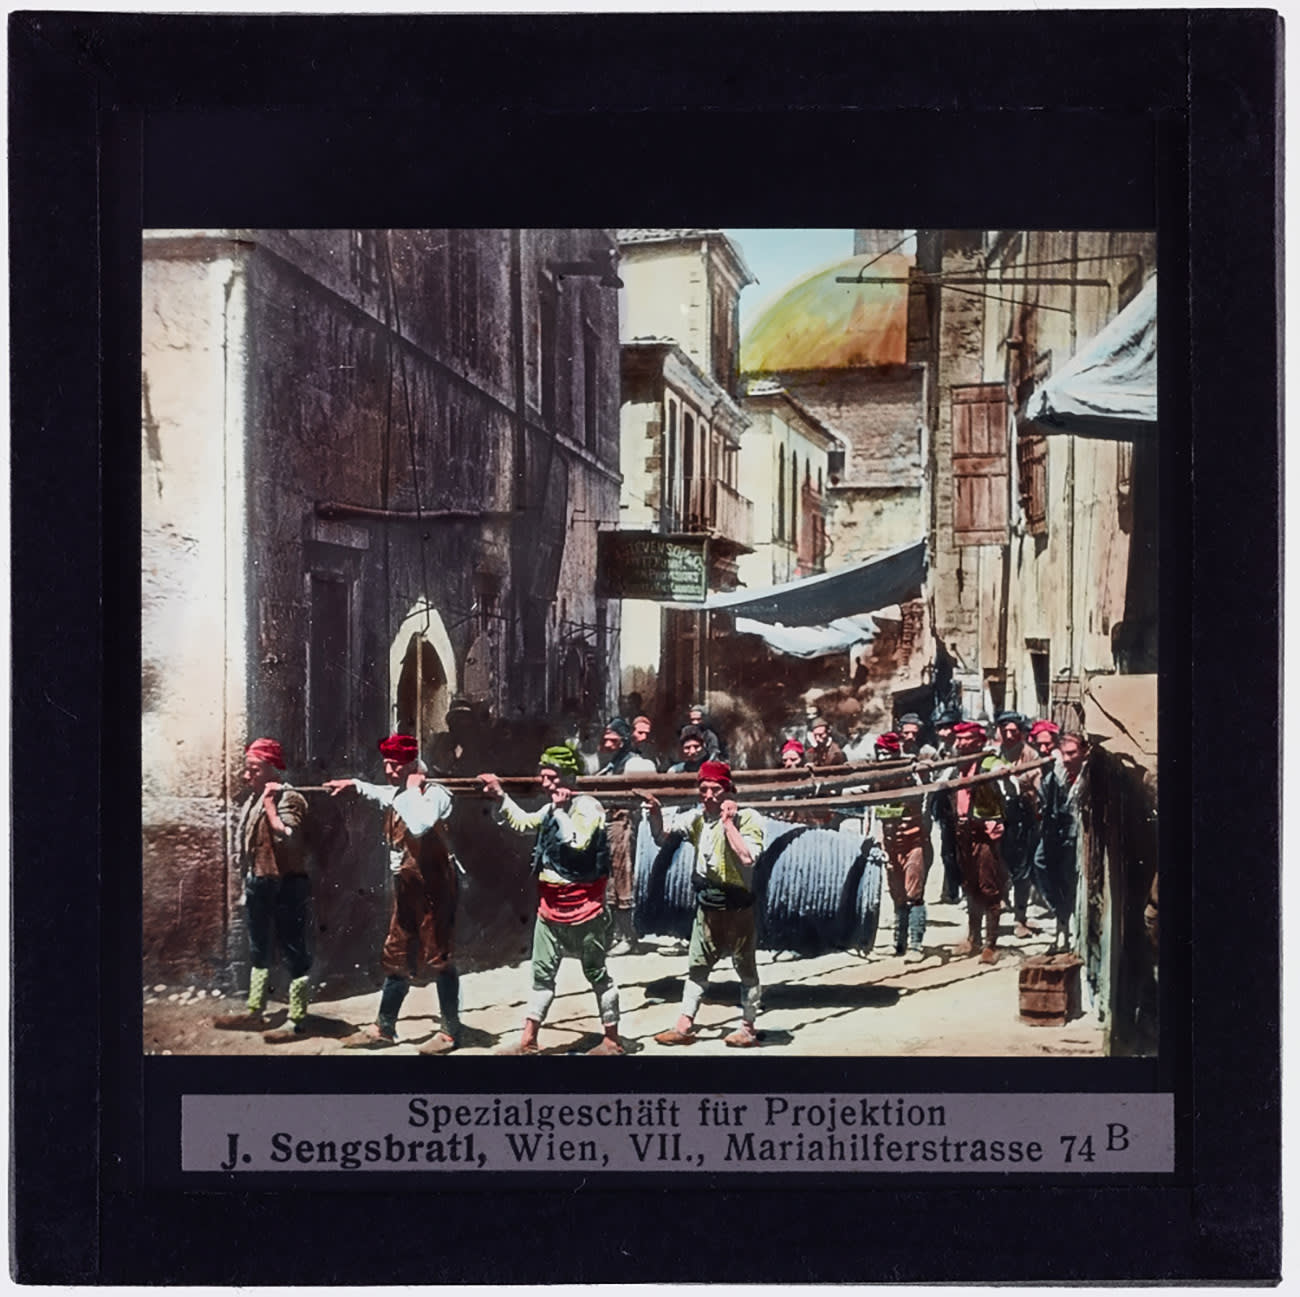 من "كنوز" العصر العثماني.. صور قد تعيد بذاكرتك حكايا الزمان 